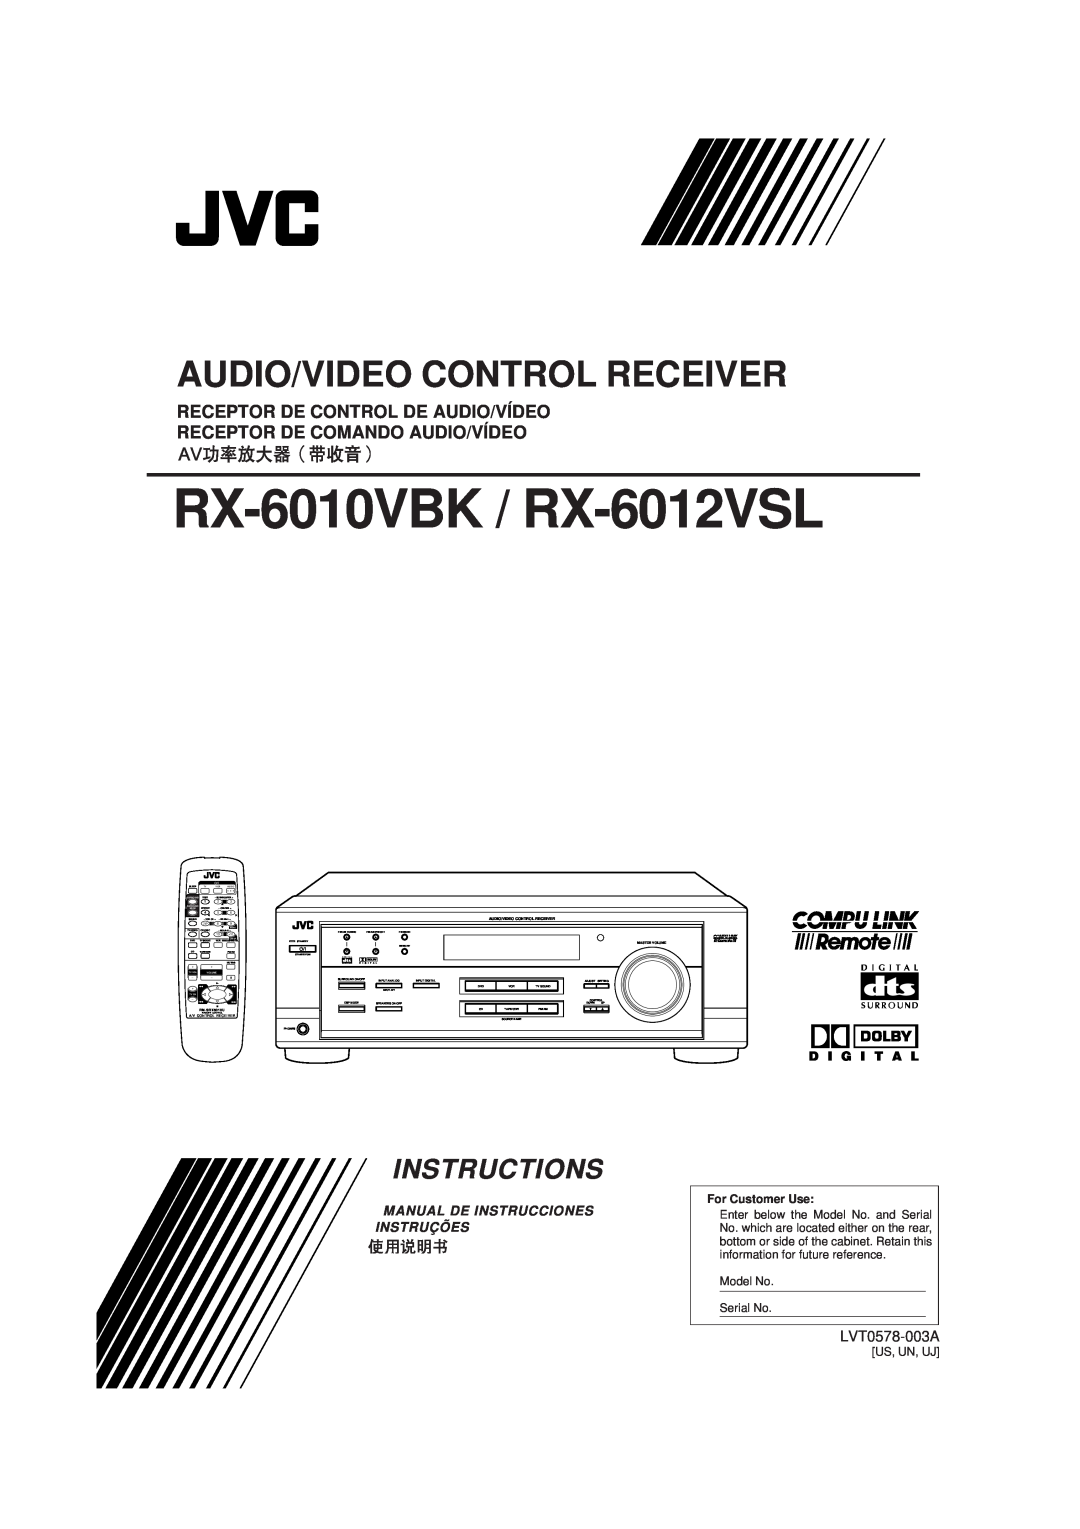 JVC manual RX-6010VBK / RX-6012VSL, Audio/Video Control Receiver, Instructions, Receptor De Control De Audio/Vídeo, 7/P 